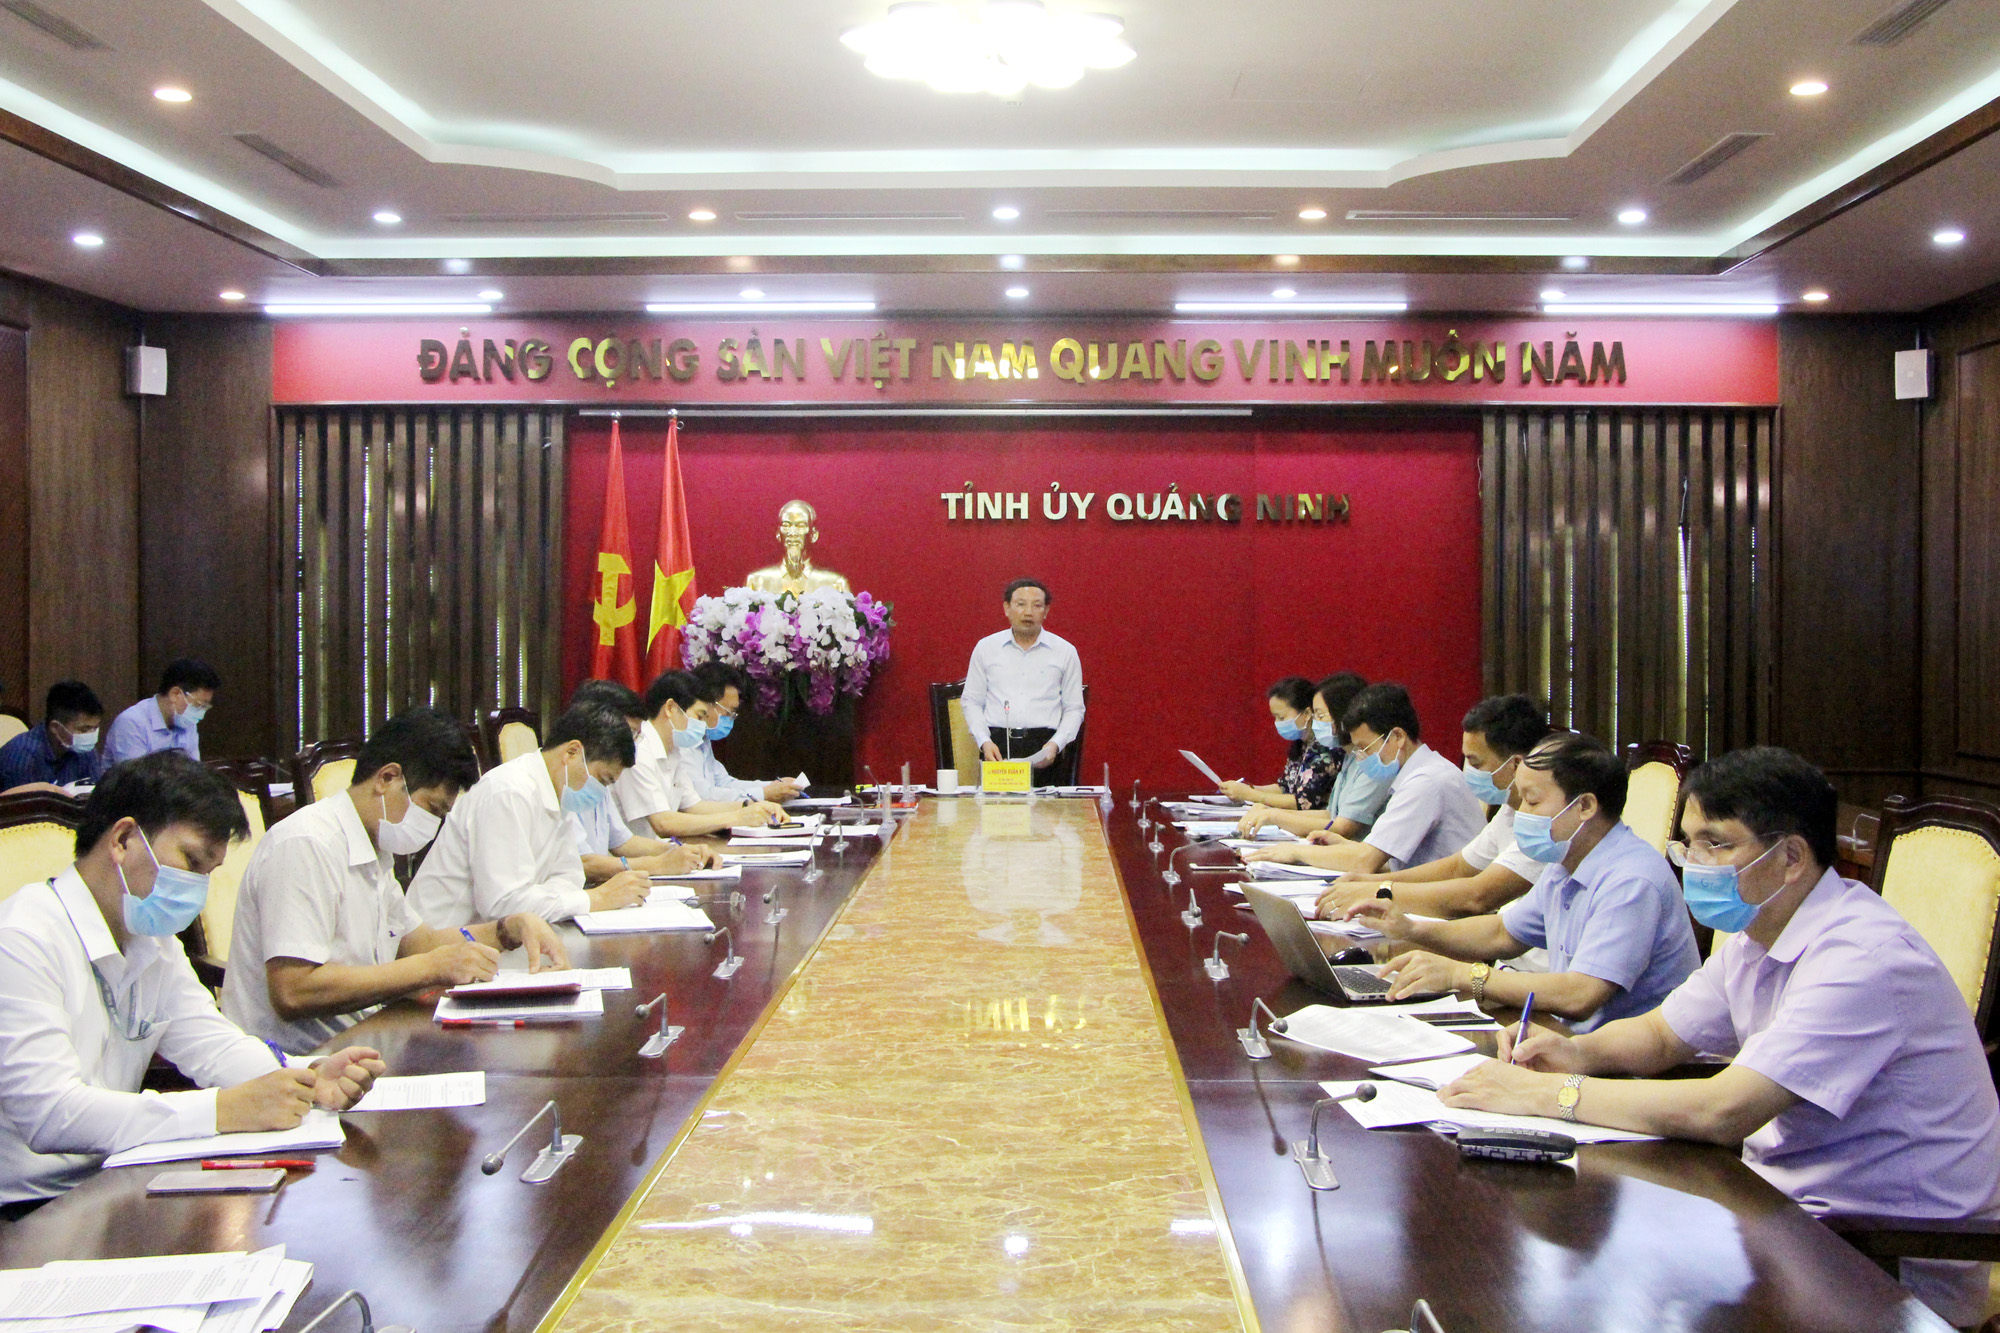 Đồng chí Nguyễn Xuân Ký, Bí thư Tỉnh ủy, Chủ tịch HĐND tỉnh, kết luận cuộc họp.